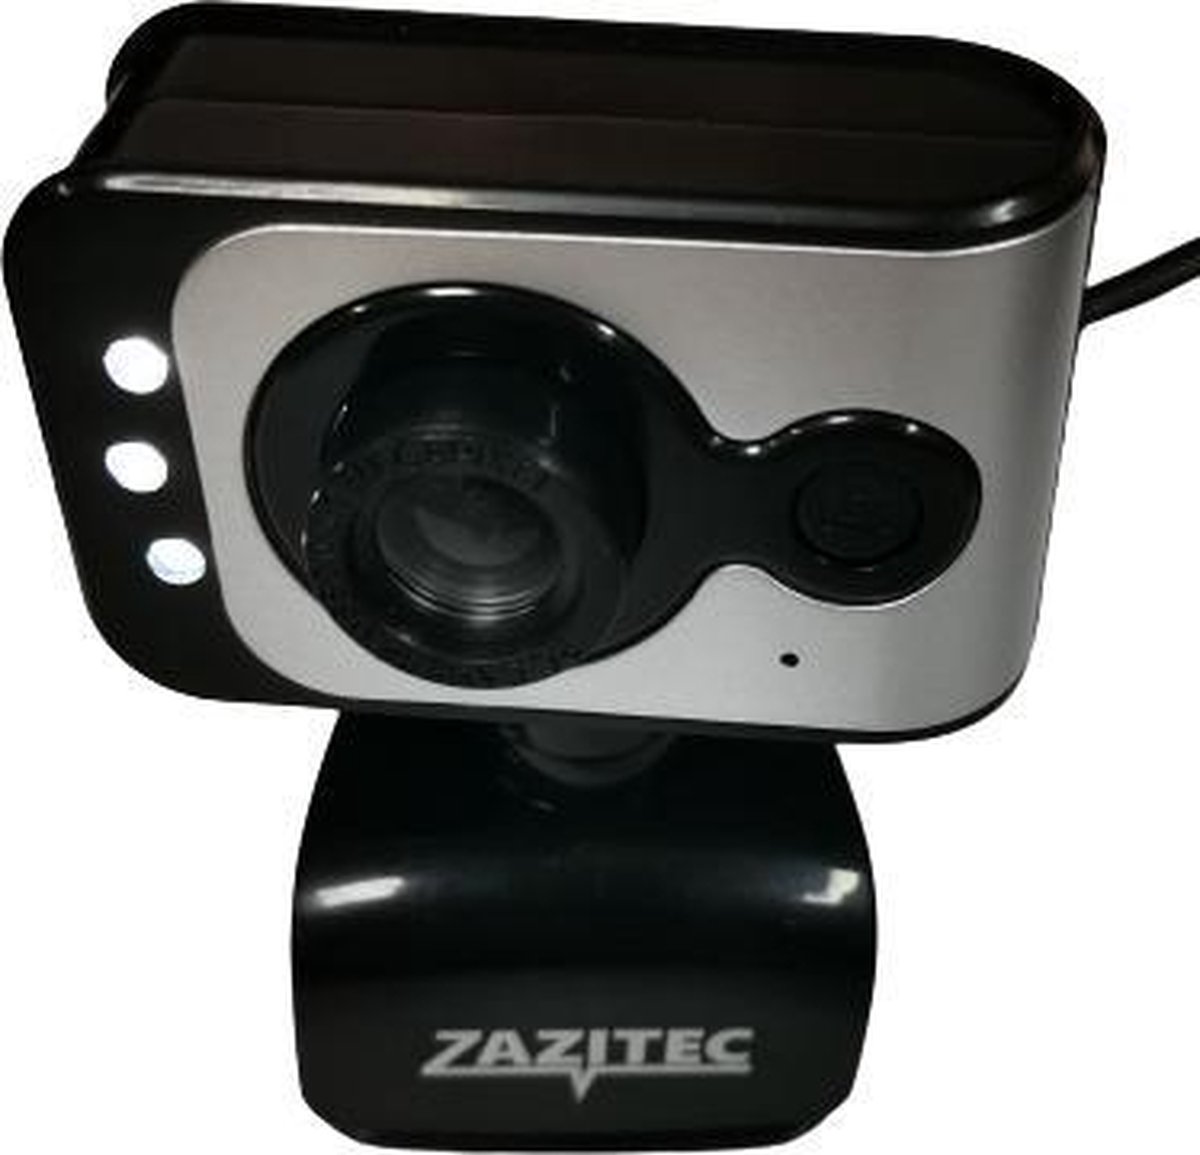 Zazitec zt-ca001 webcam met microfoon